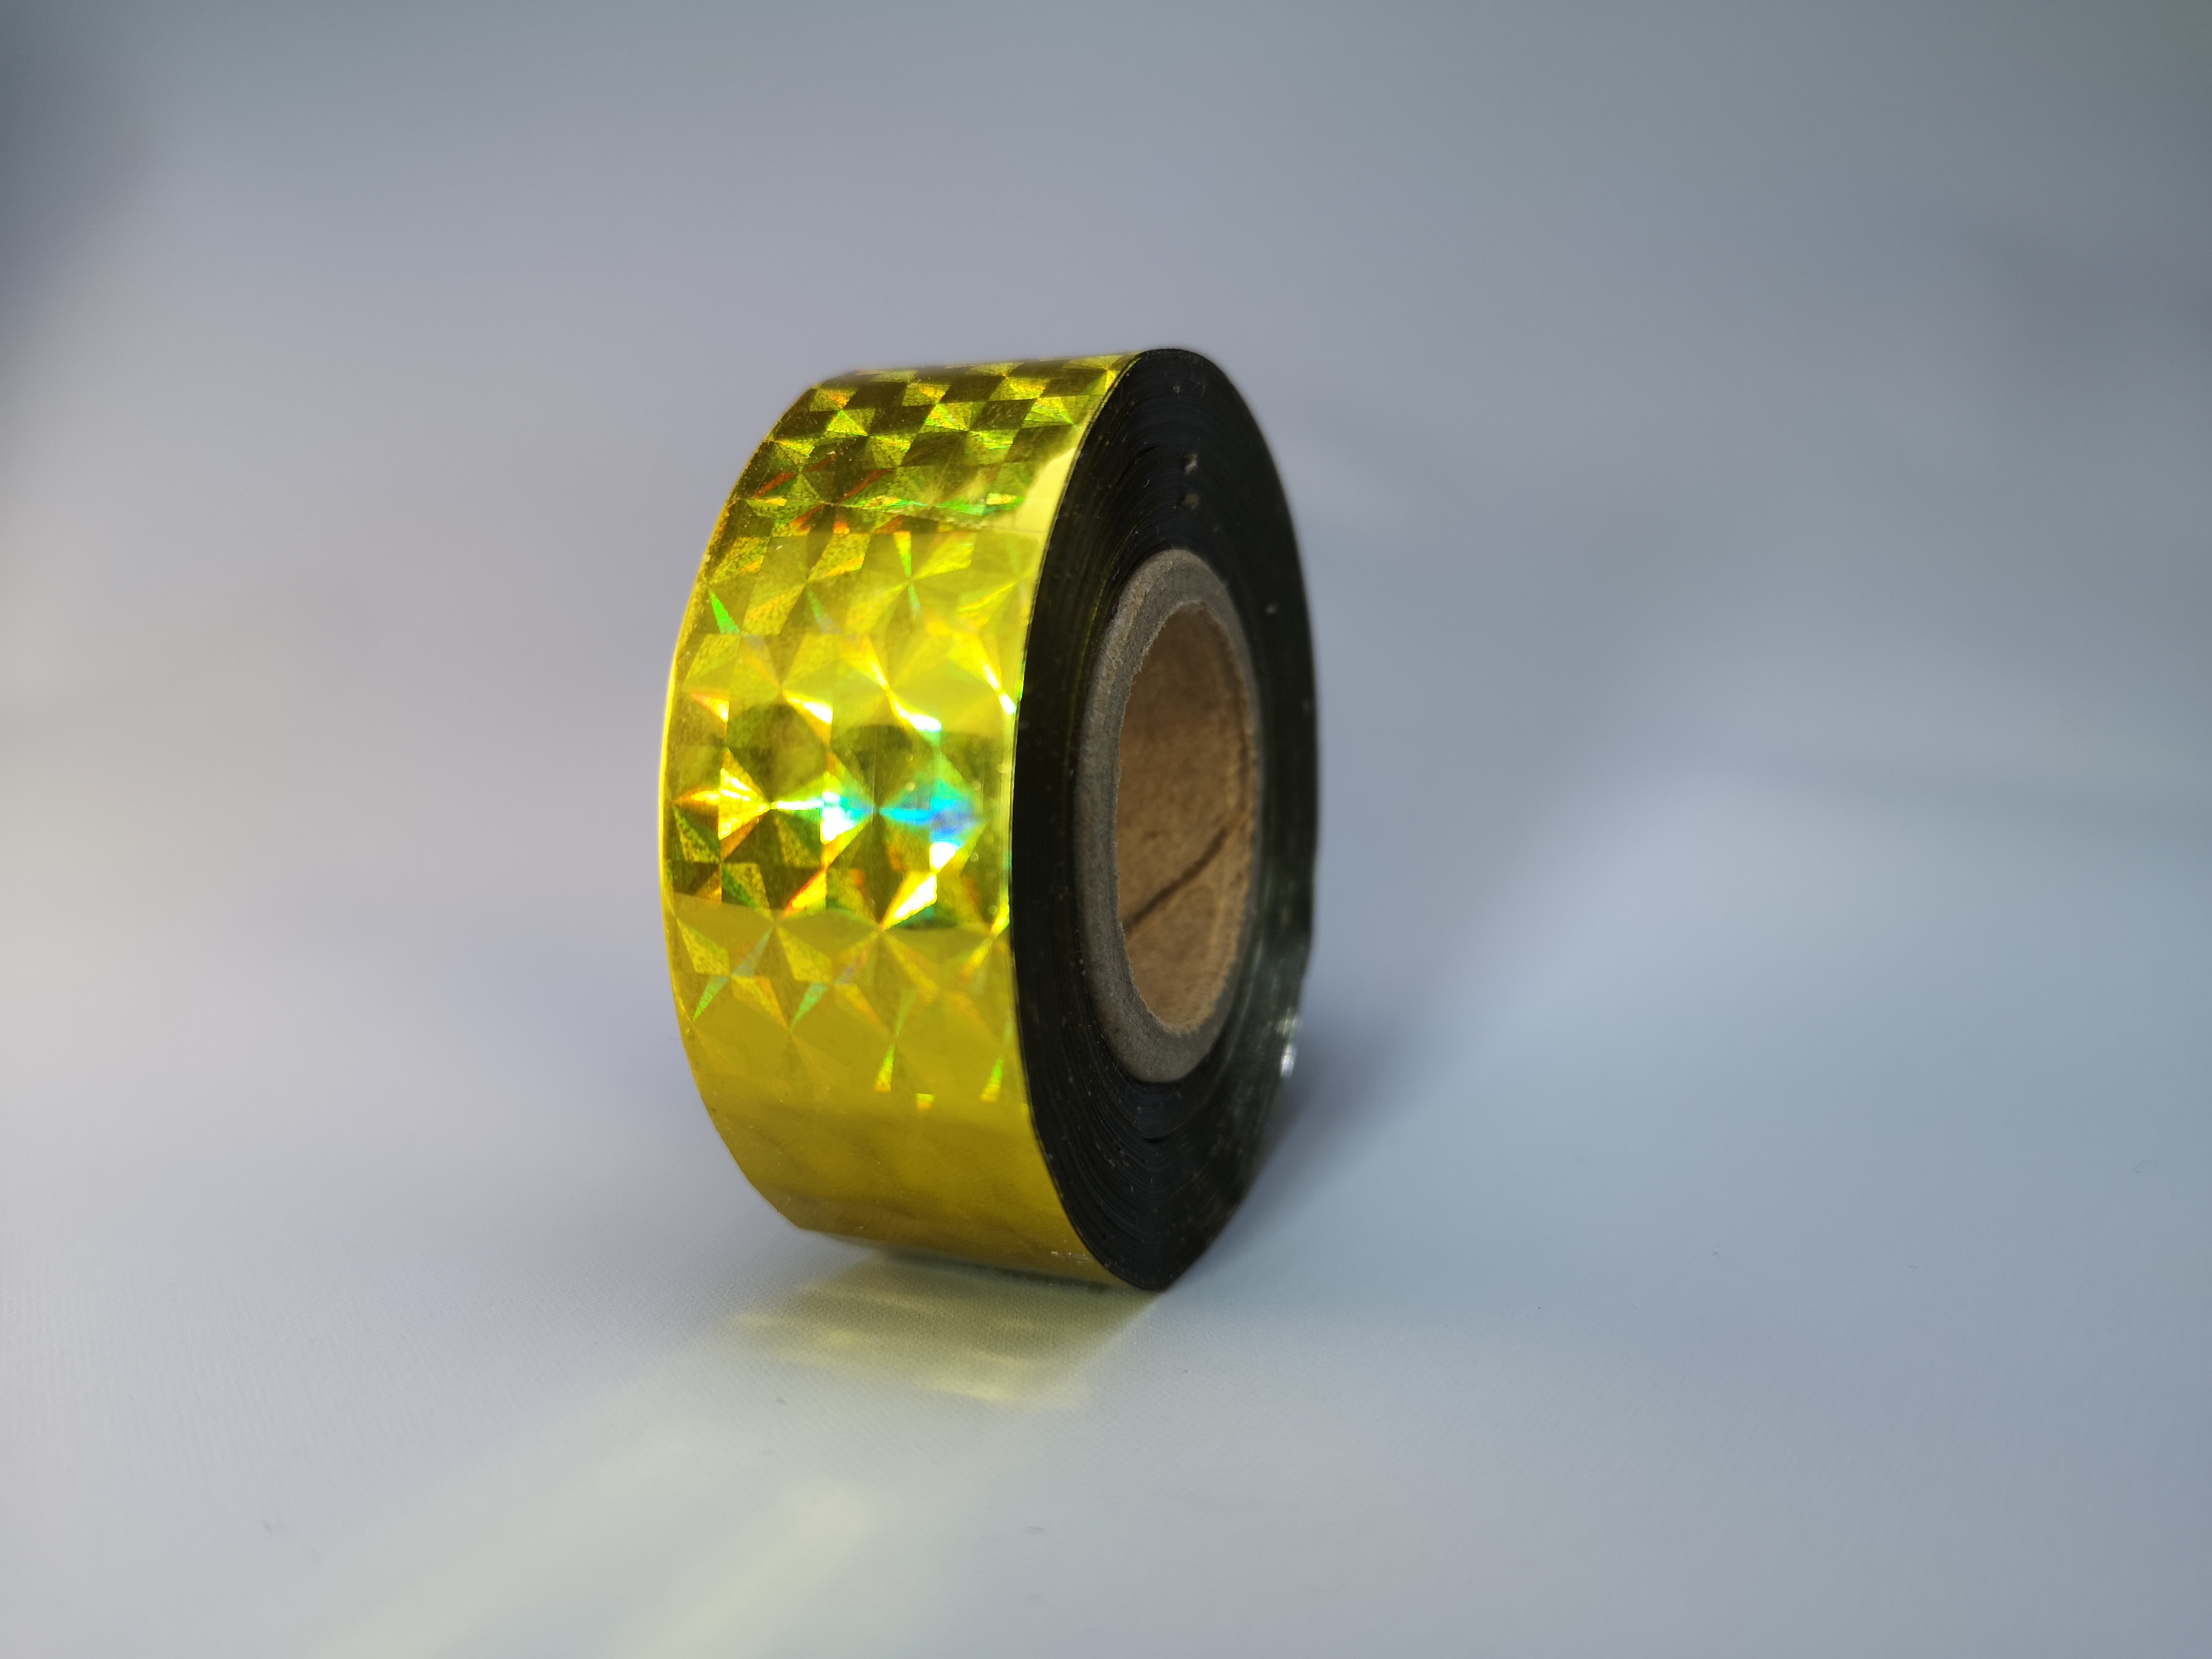 Holografic Prisma Gold 25m Deco-Tape